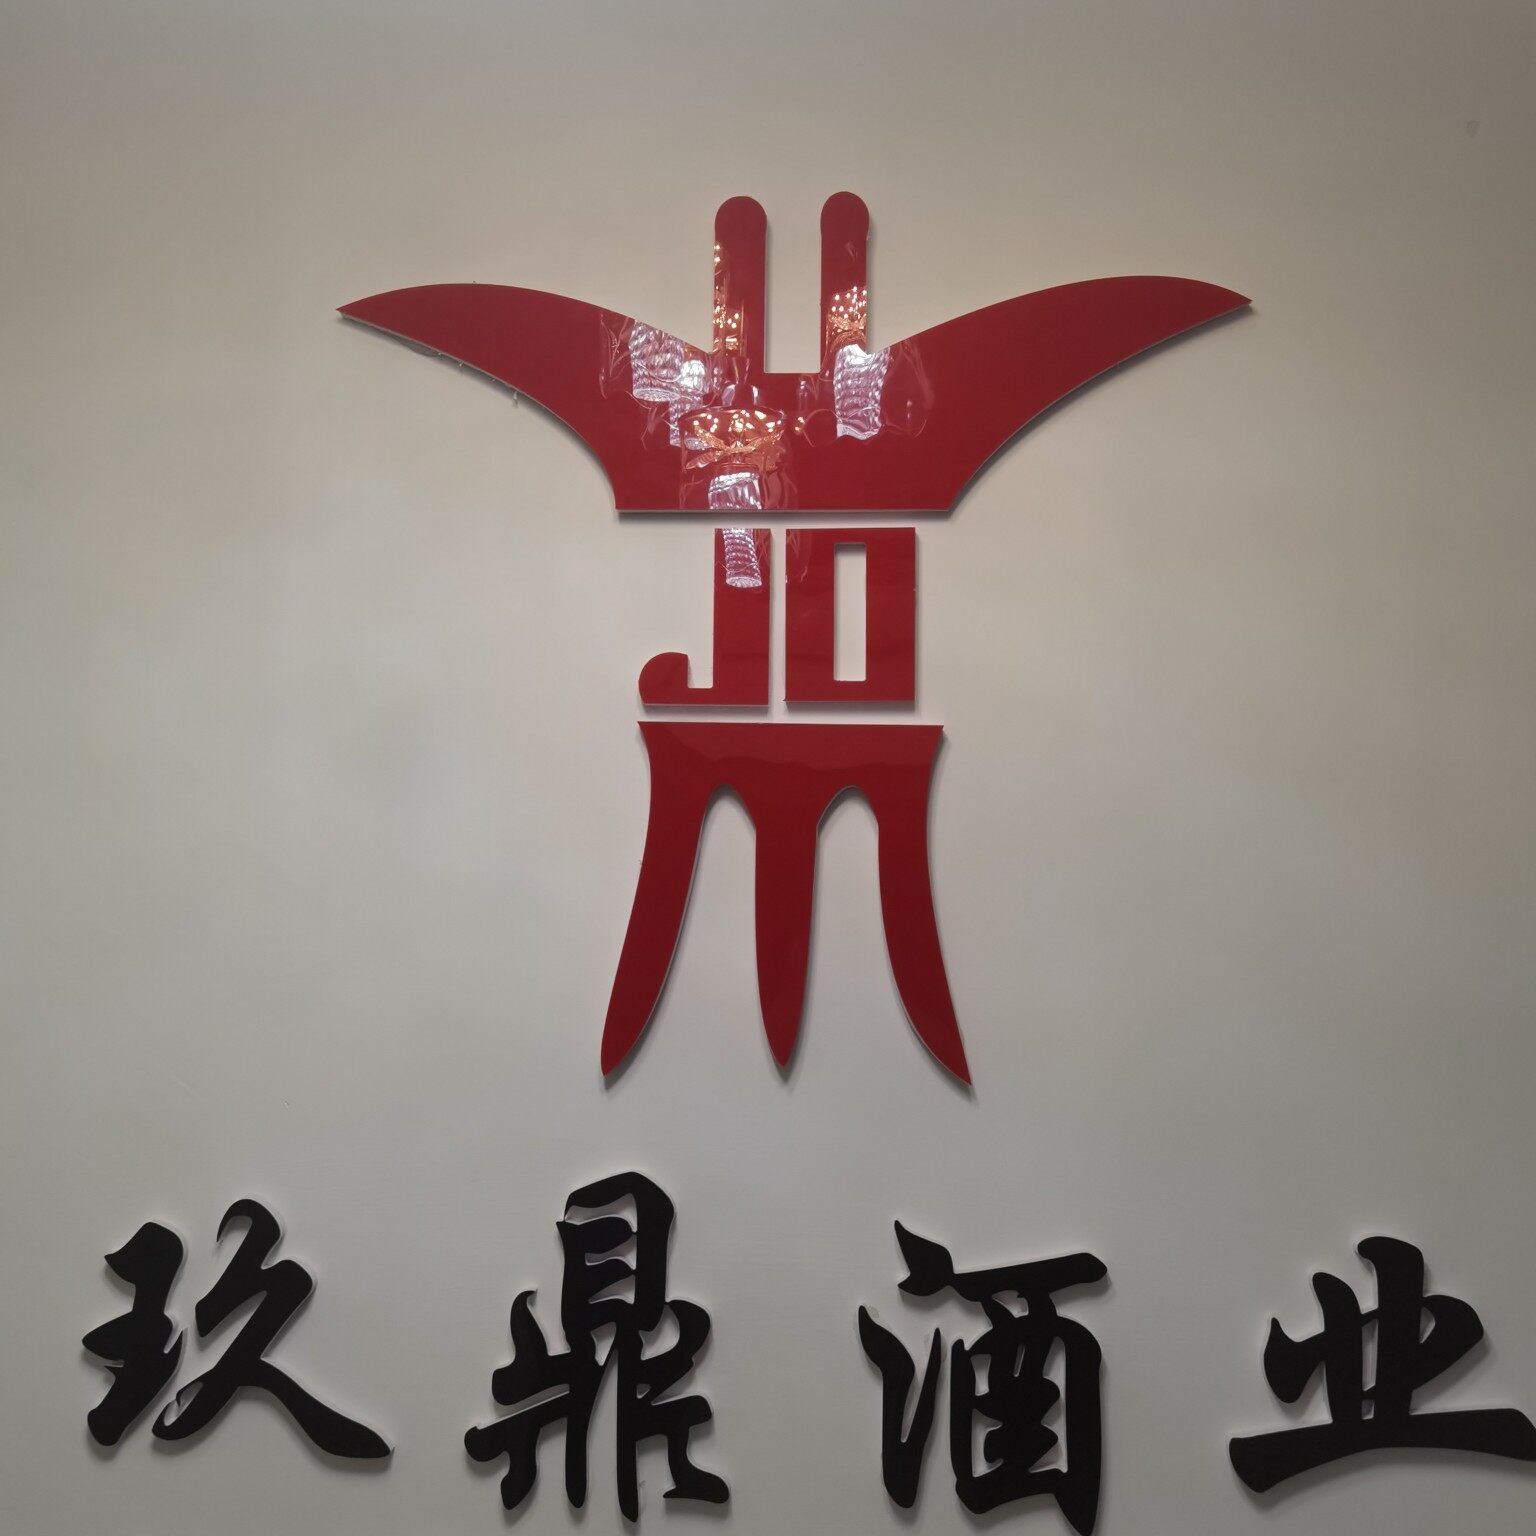 遵义玖鼎酒业有限公司logo